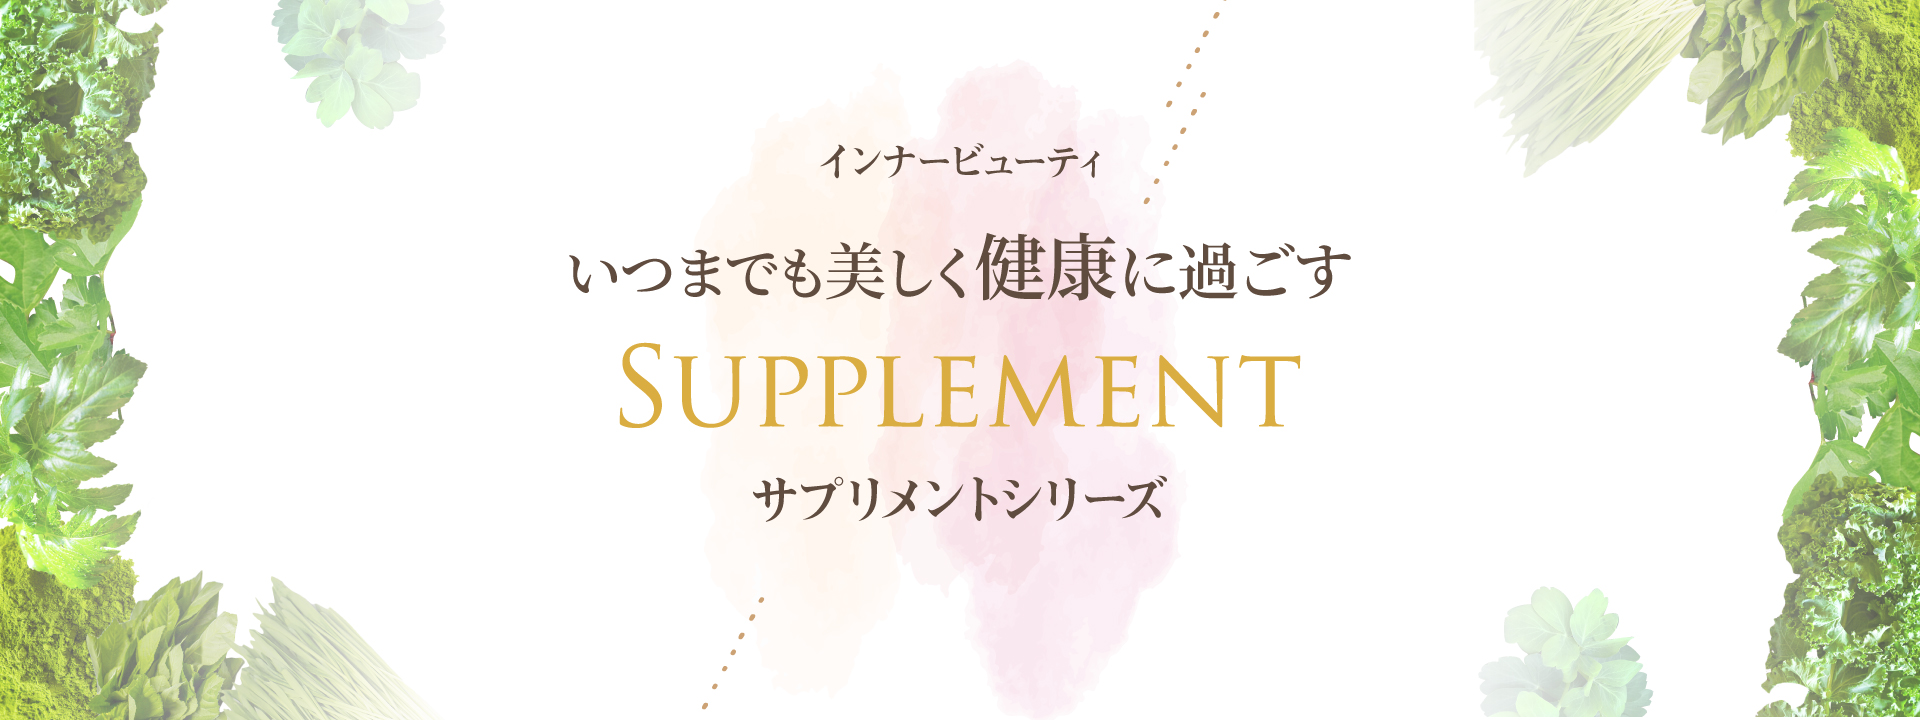 サプリメント / SUPPLEMENT